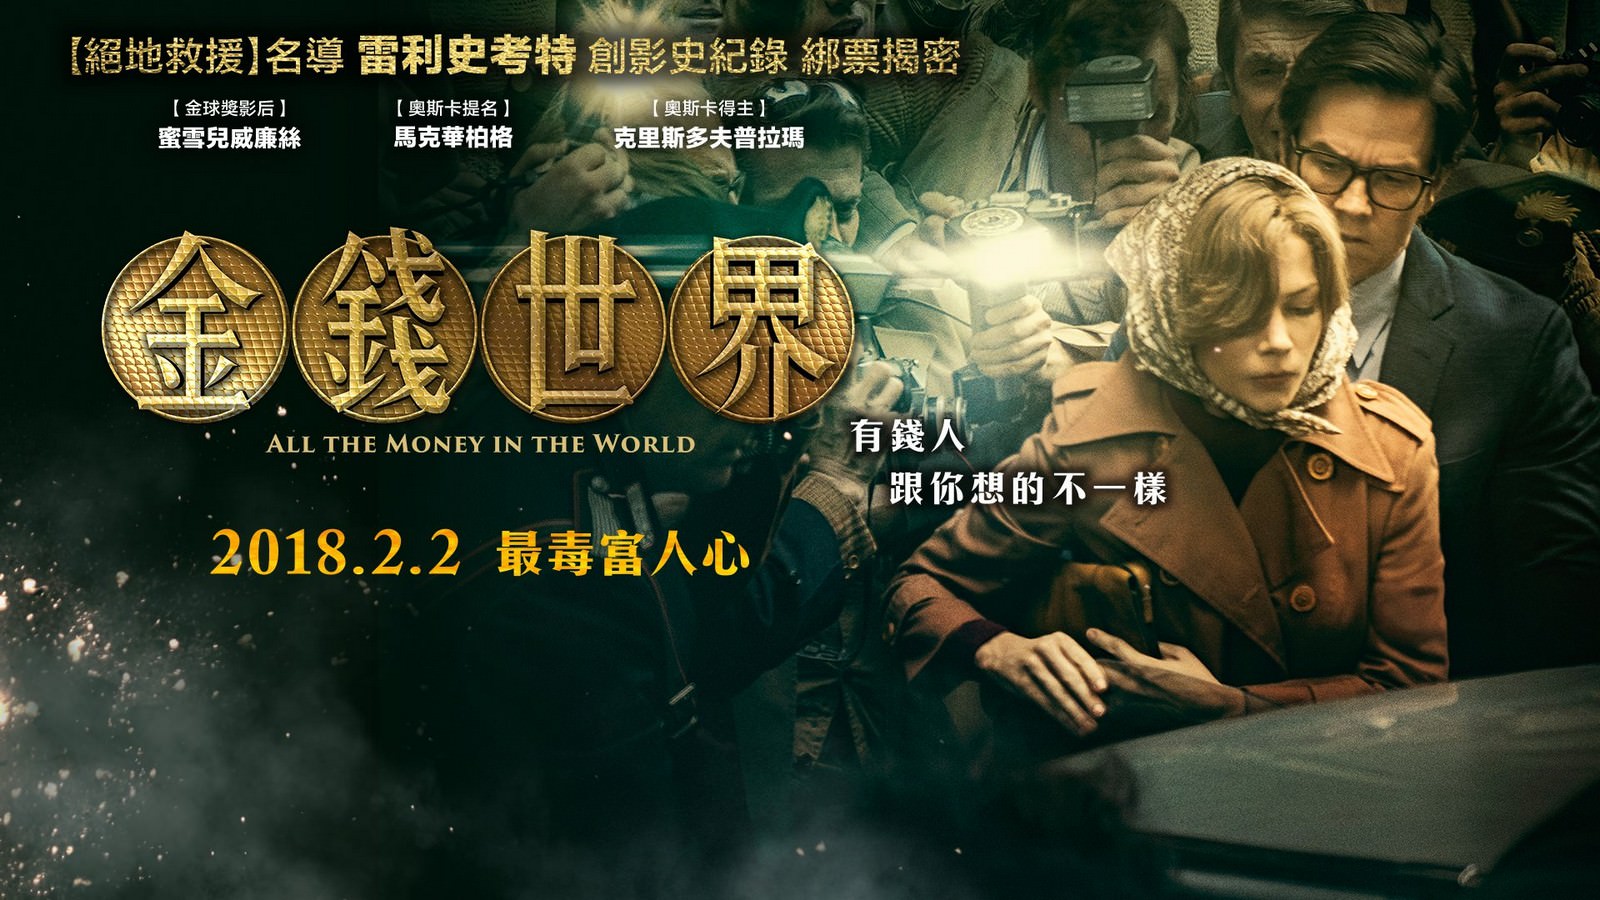 Movie, All the Money in the World(美國, 2017) / 金錢世界(台) / 金钱世界(中) / 萬惡金錢(港), 電影海報, 台灣, 橫版